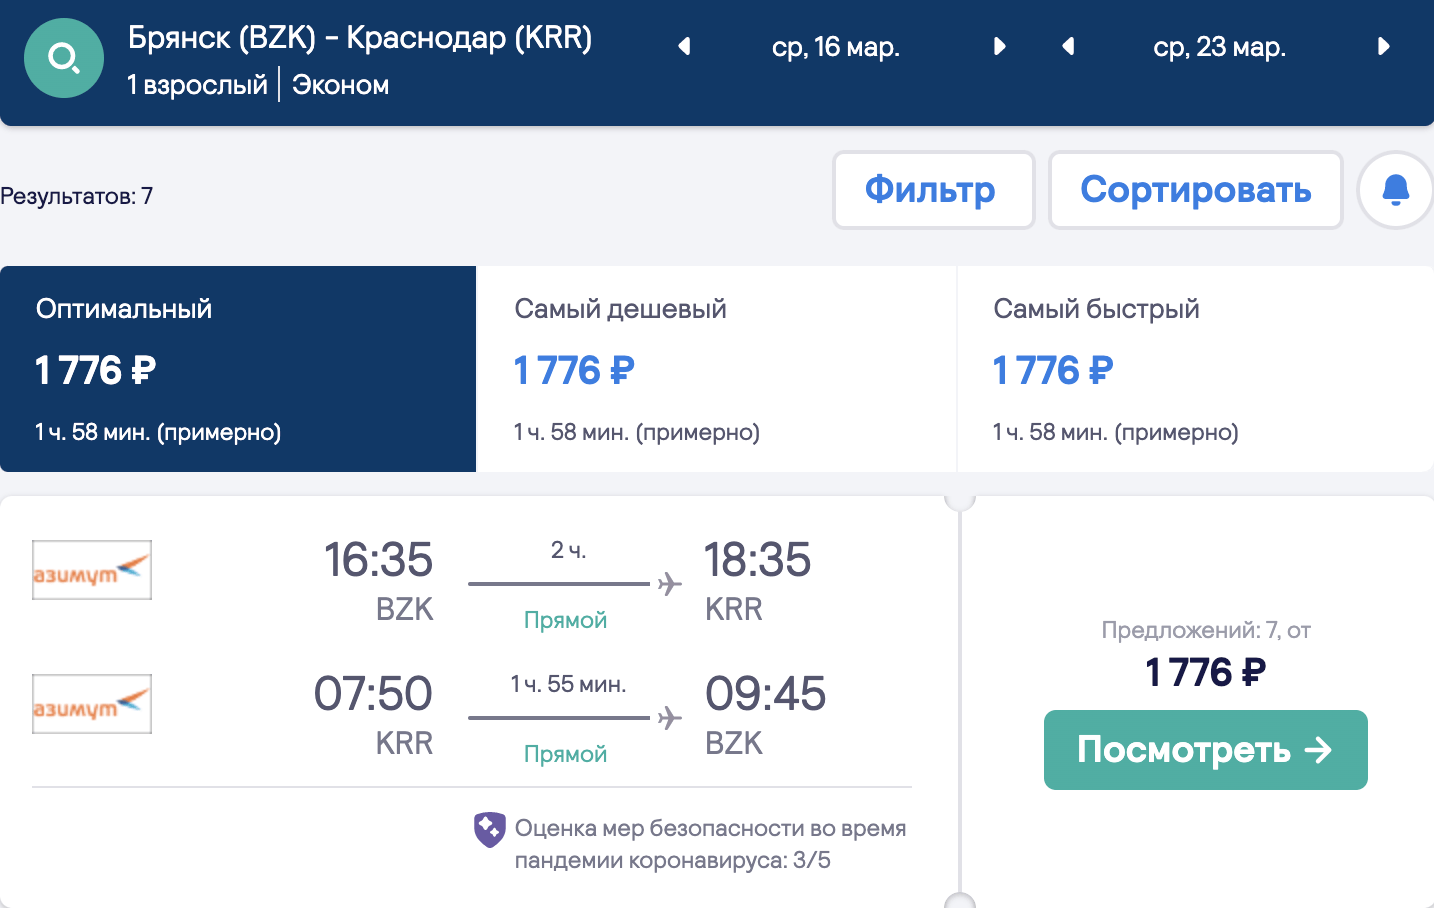 Große Auswahl an günstigen Flügen aus Regionen nach Krasnodar und Minvody ab 1800₽ Hin- und Rückflug